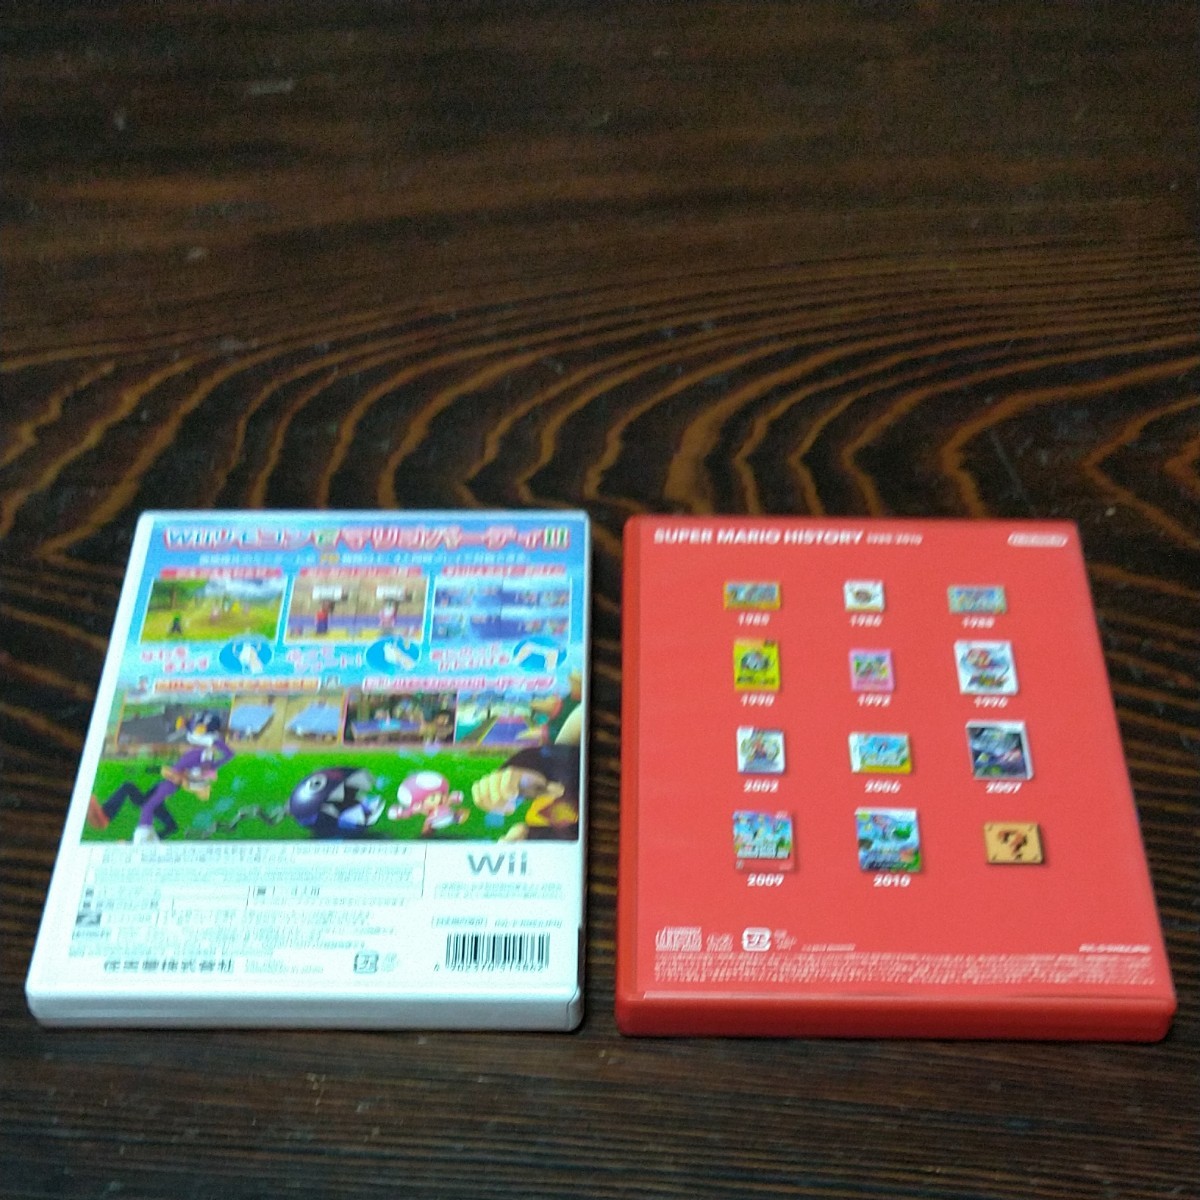 【Wii】 マリオパーティ8